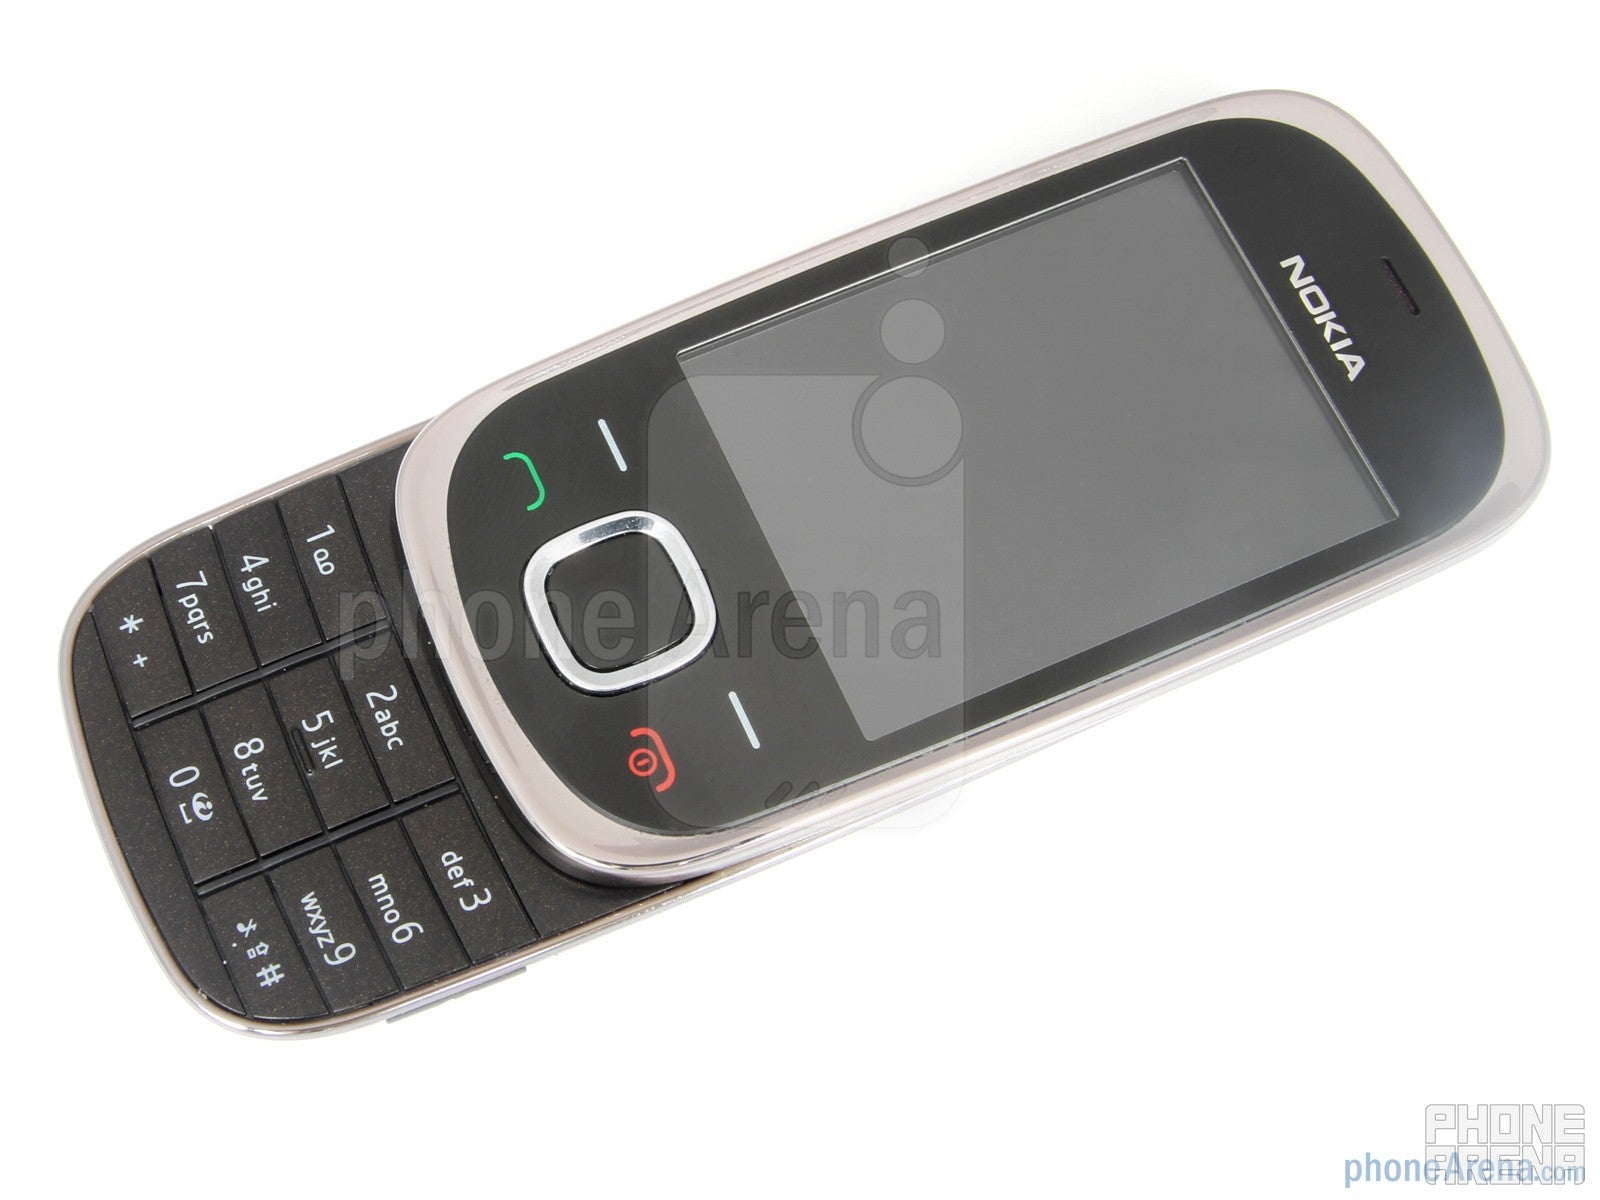 Nokia 7230 Review